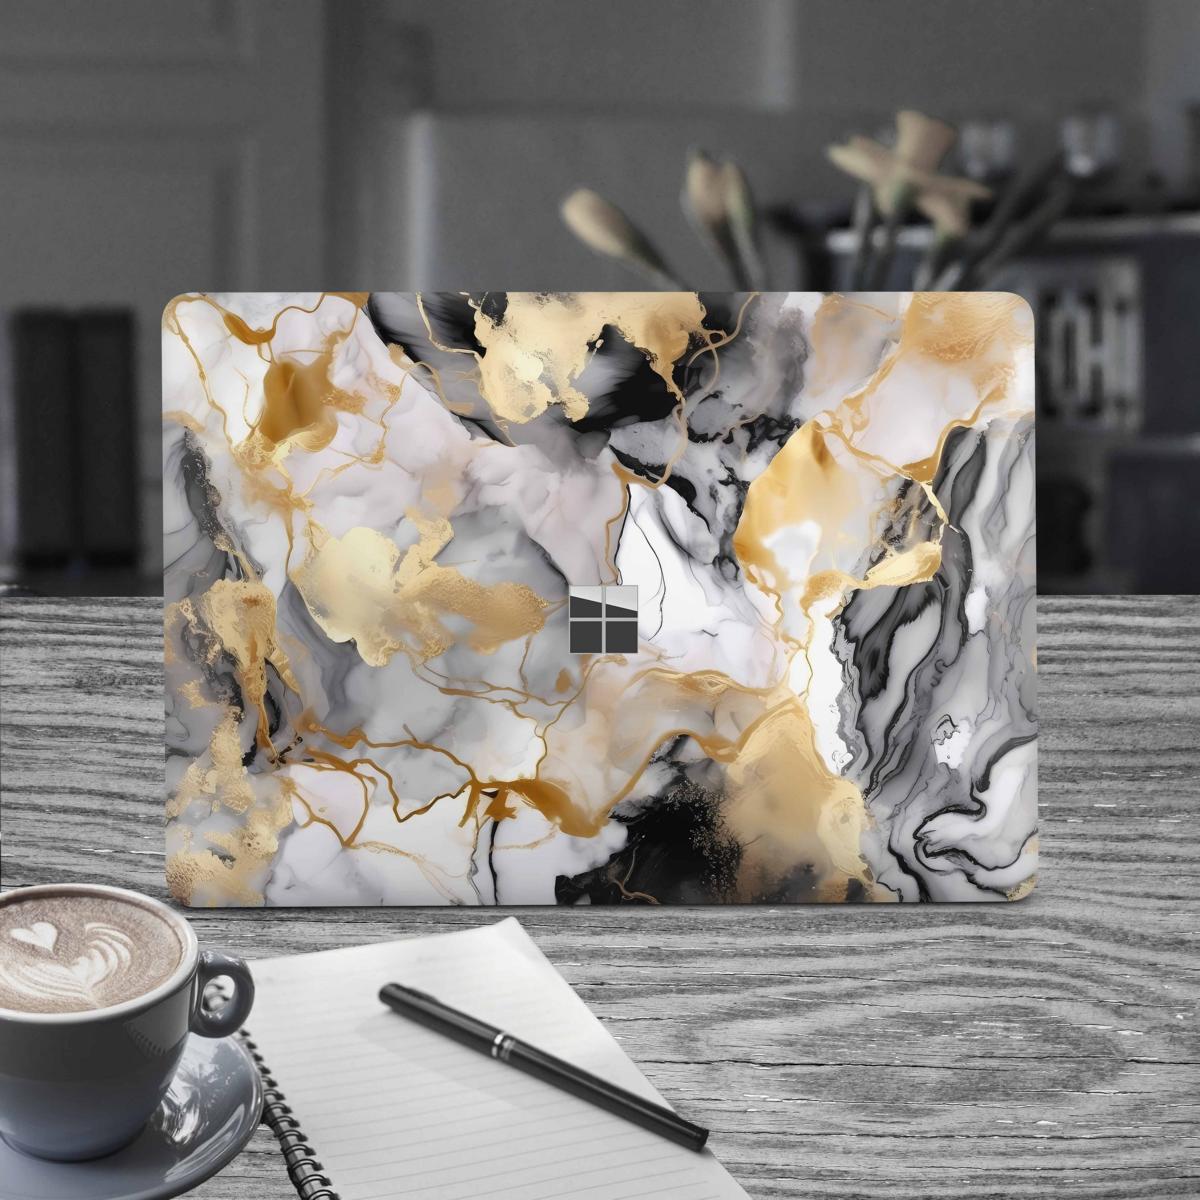 Microsoft Surface Book 2 Skin 15" Premium Vinylfolie Kratzerschutz Design Marmor gold black Elektronik-Sticker & -Aufkleber Skins4u   